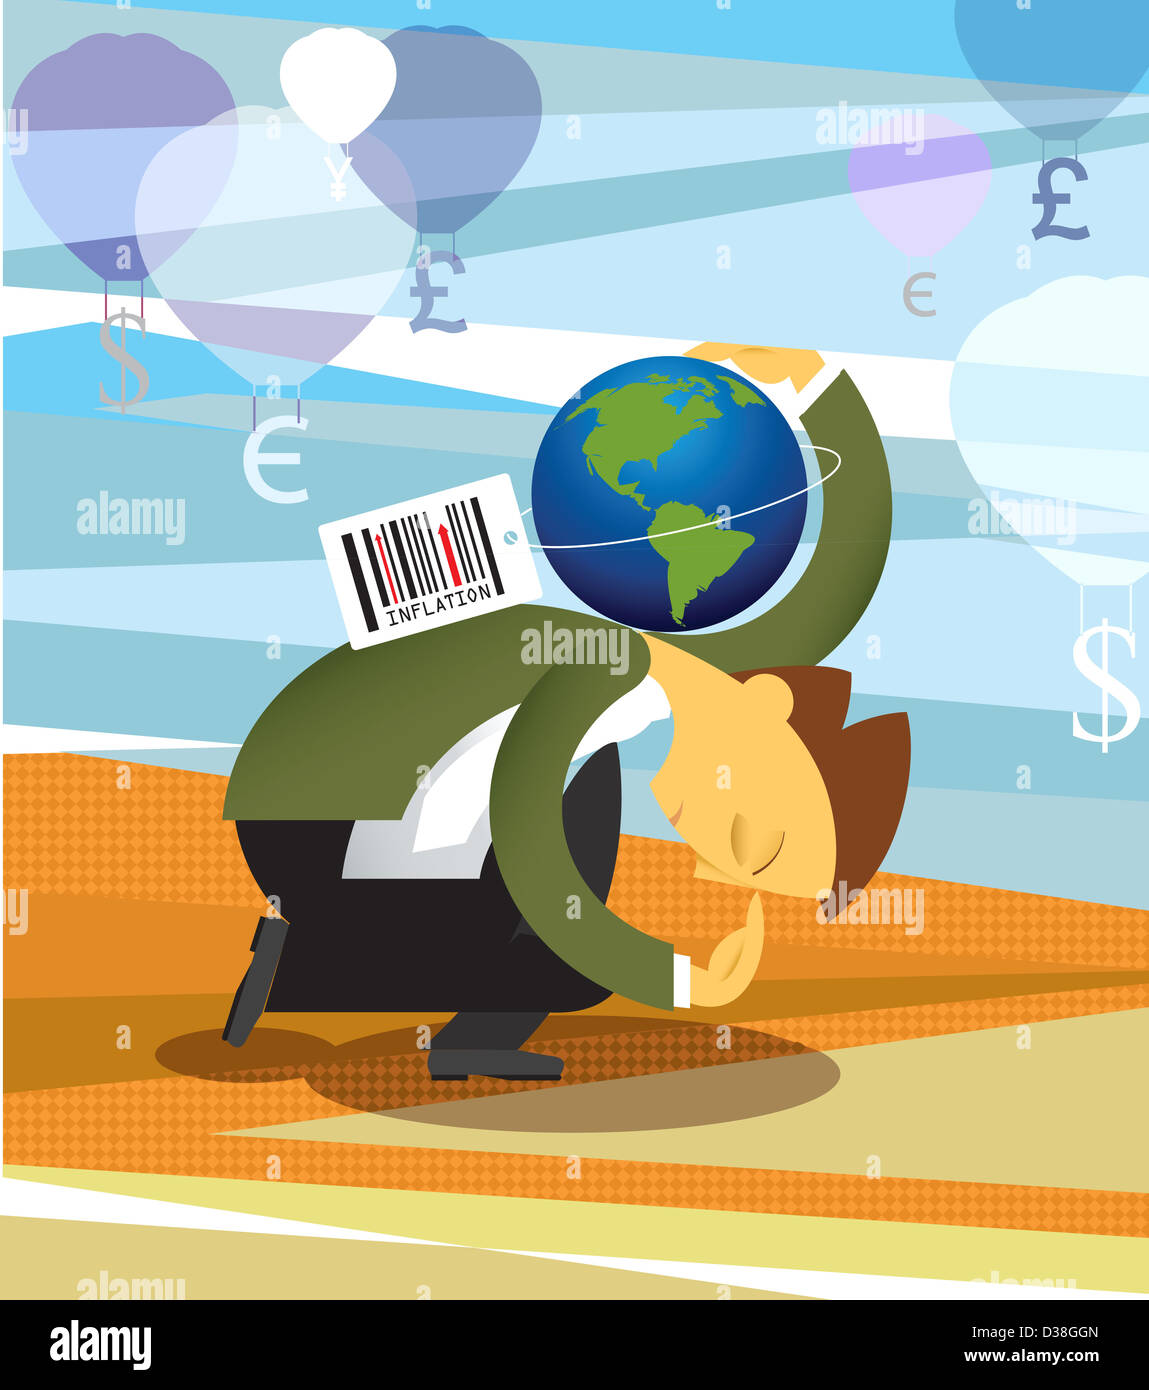 Immagine concettuale che rappresenta l'inflazione in economia Foto Stock